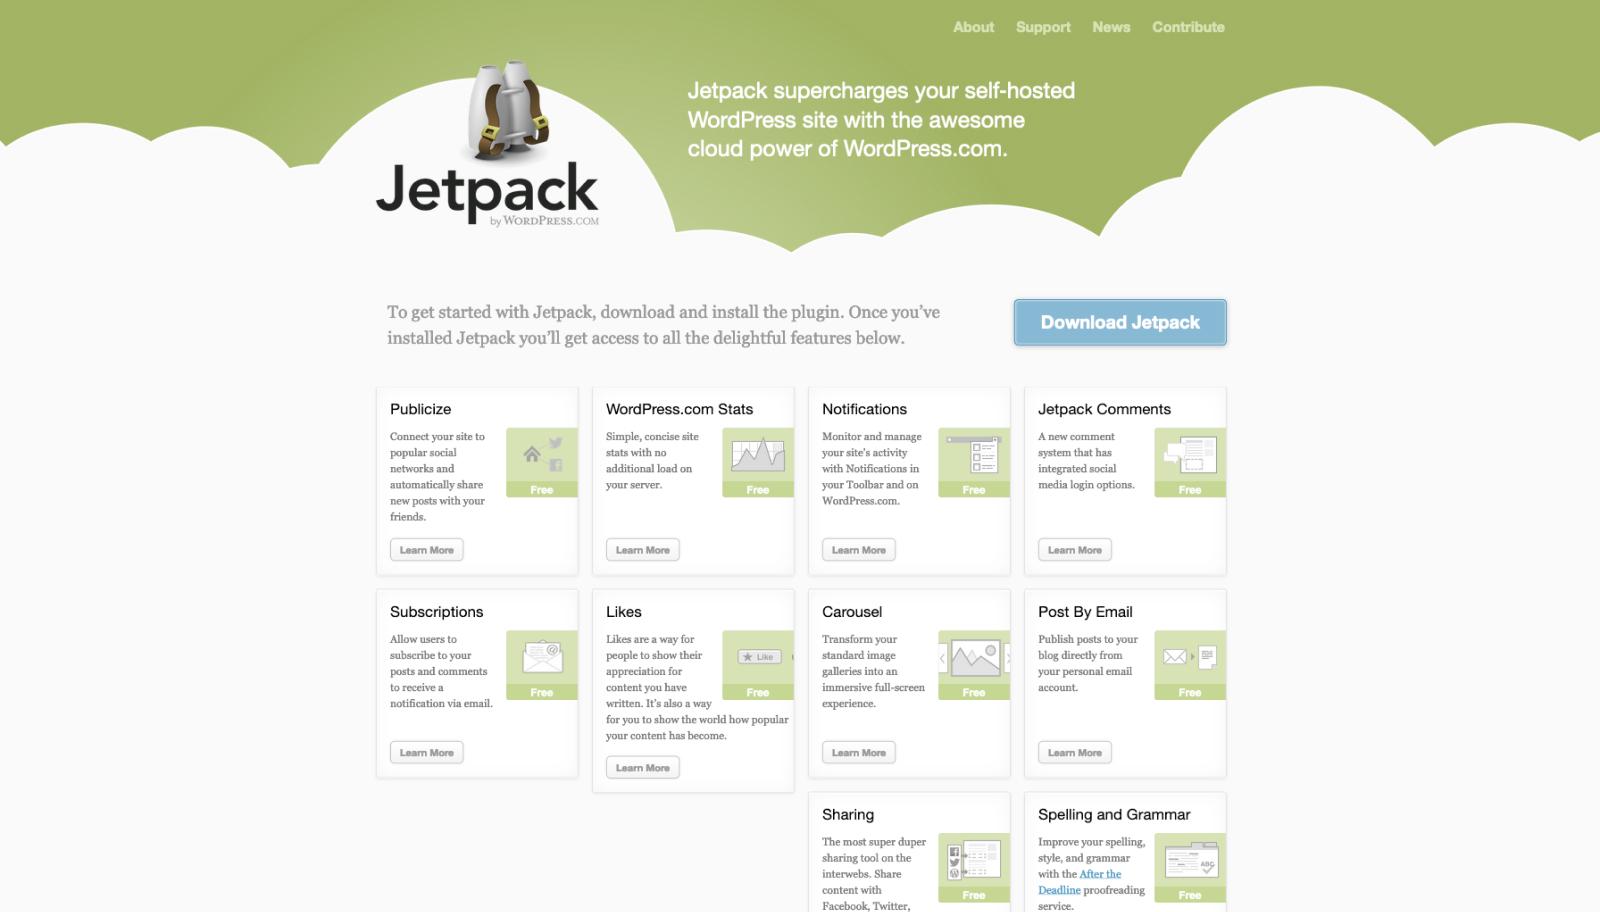 The Jetpack website in 2012